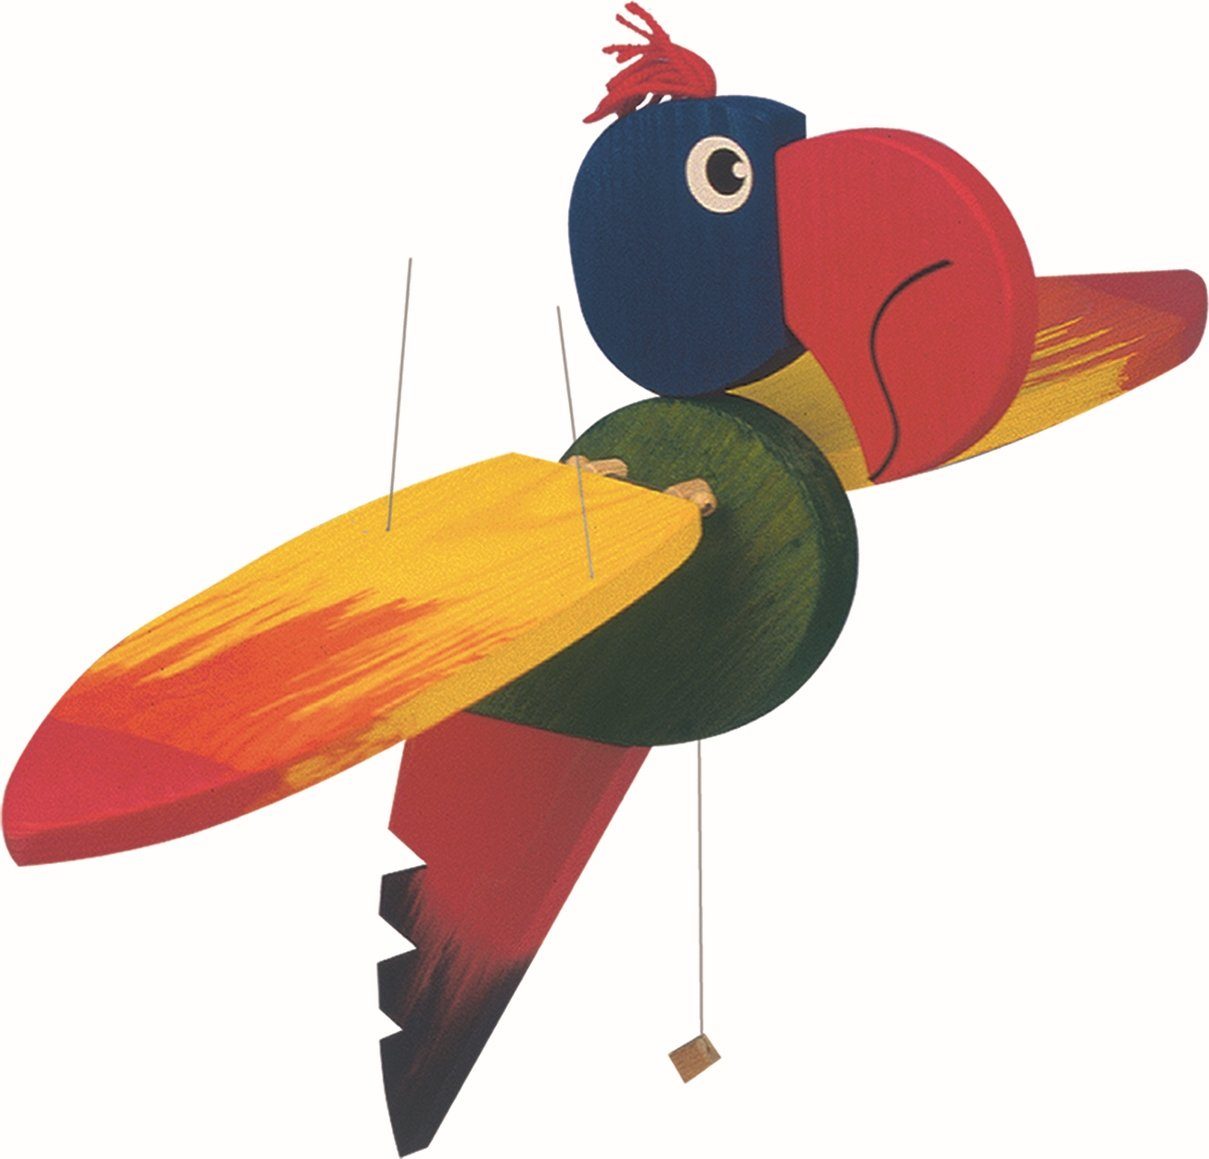 Woodyland Lernspielzeug 10214 Holz - Schwingtier Papagei mit einer Flügelspannweite von 50cm | Wahrnehmungsspiele